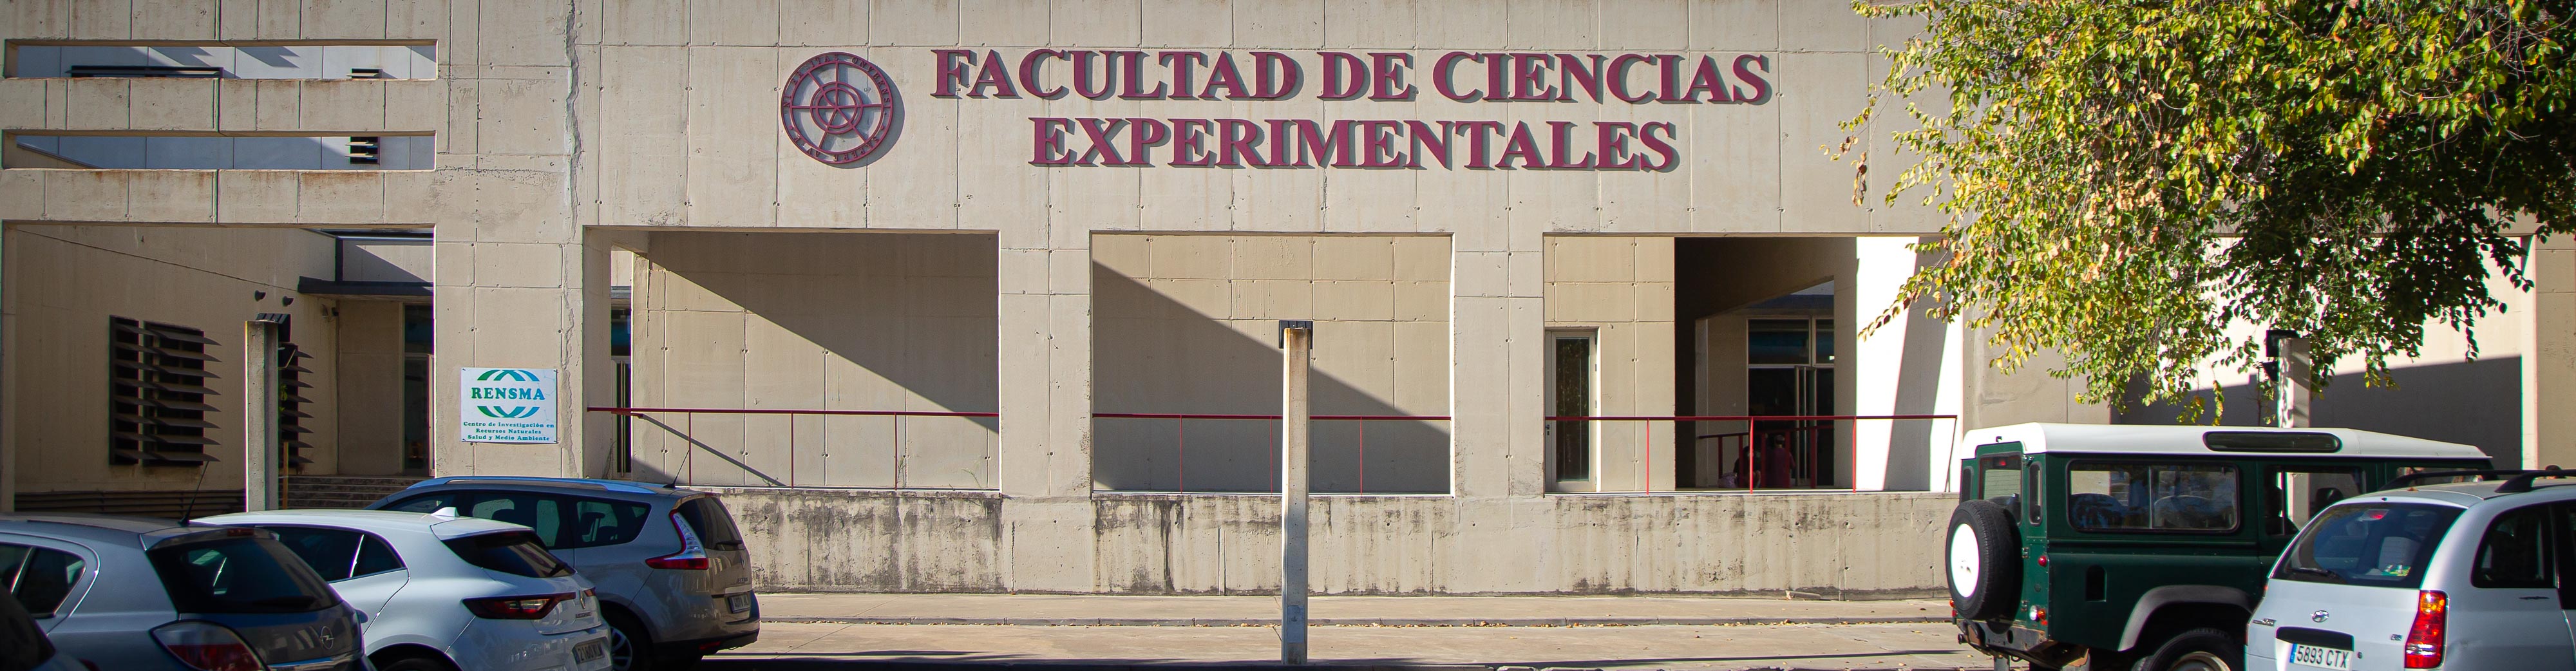 Facultad de Ciencias Experimentales en imagen de archivo